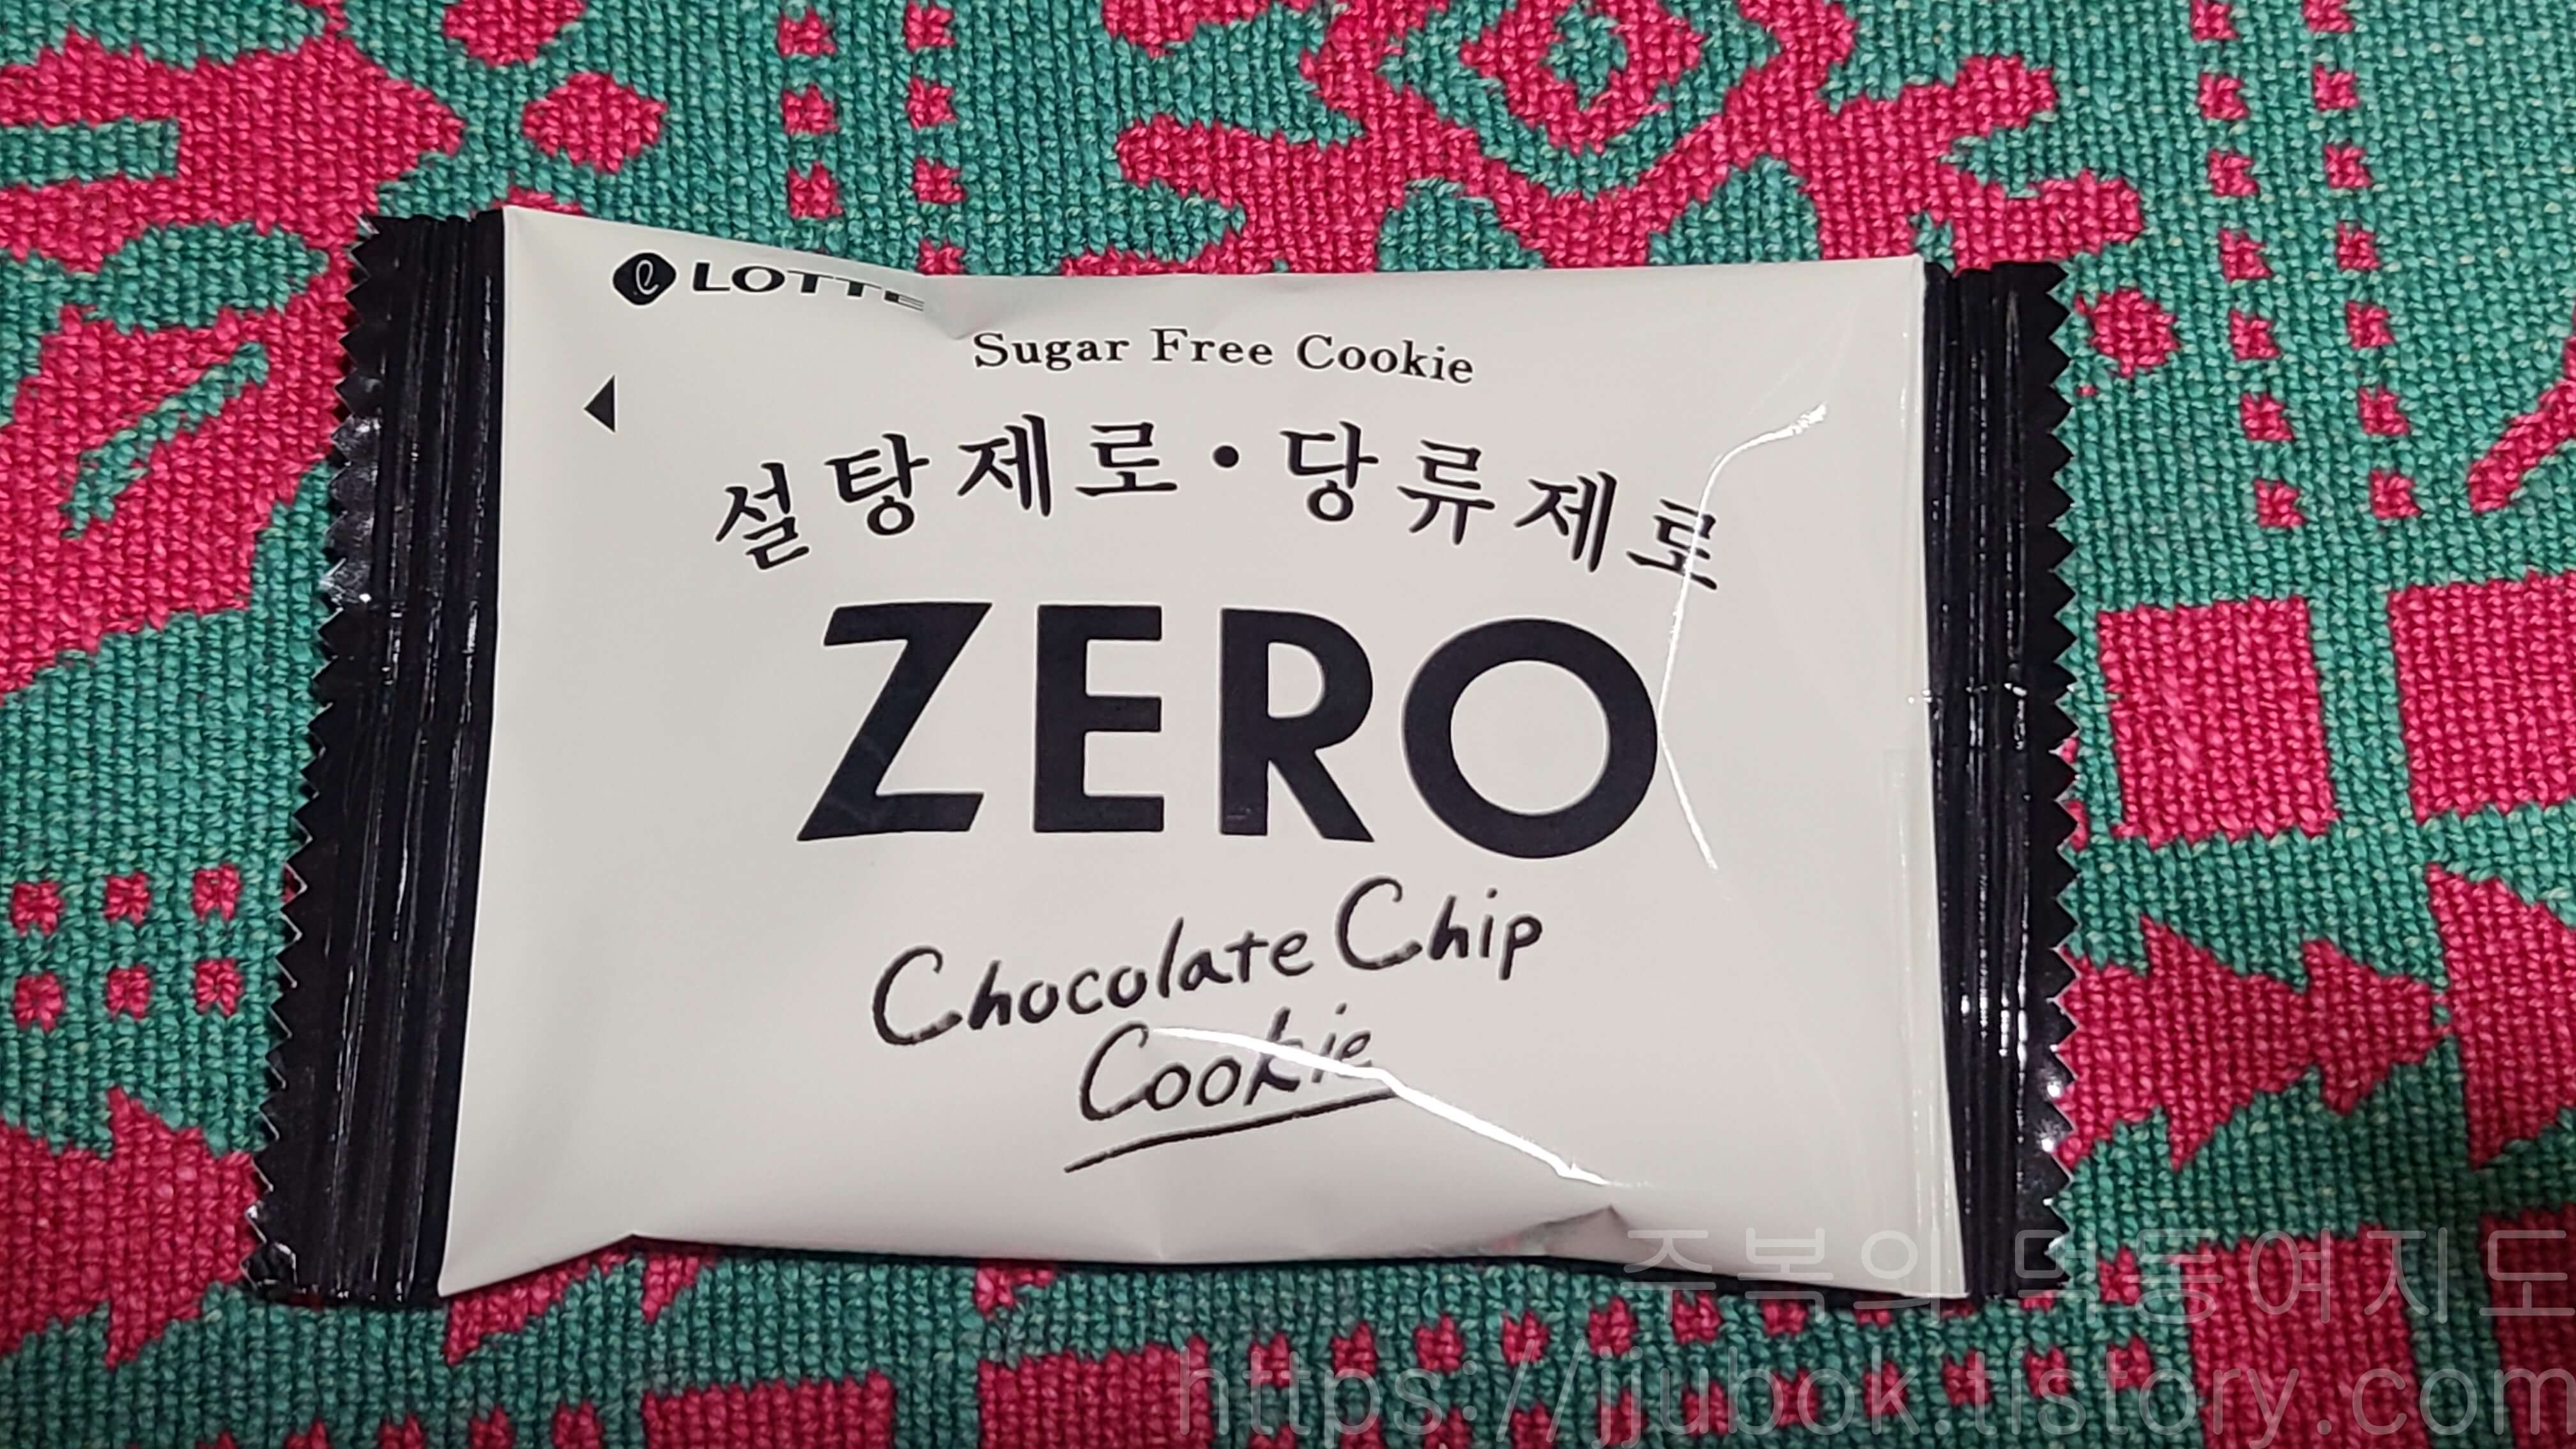 롯데-제로-초콜릿칩-쿠키-영양정보-봉지